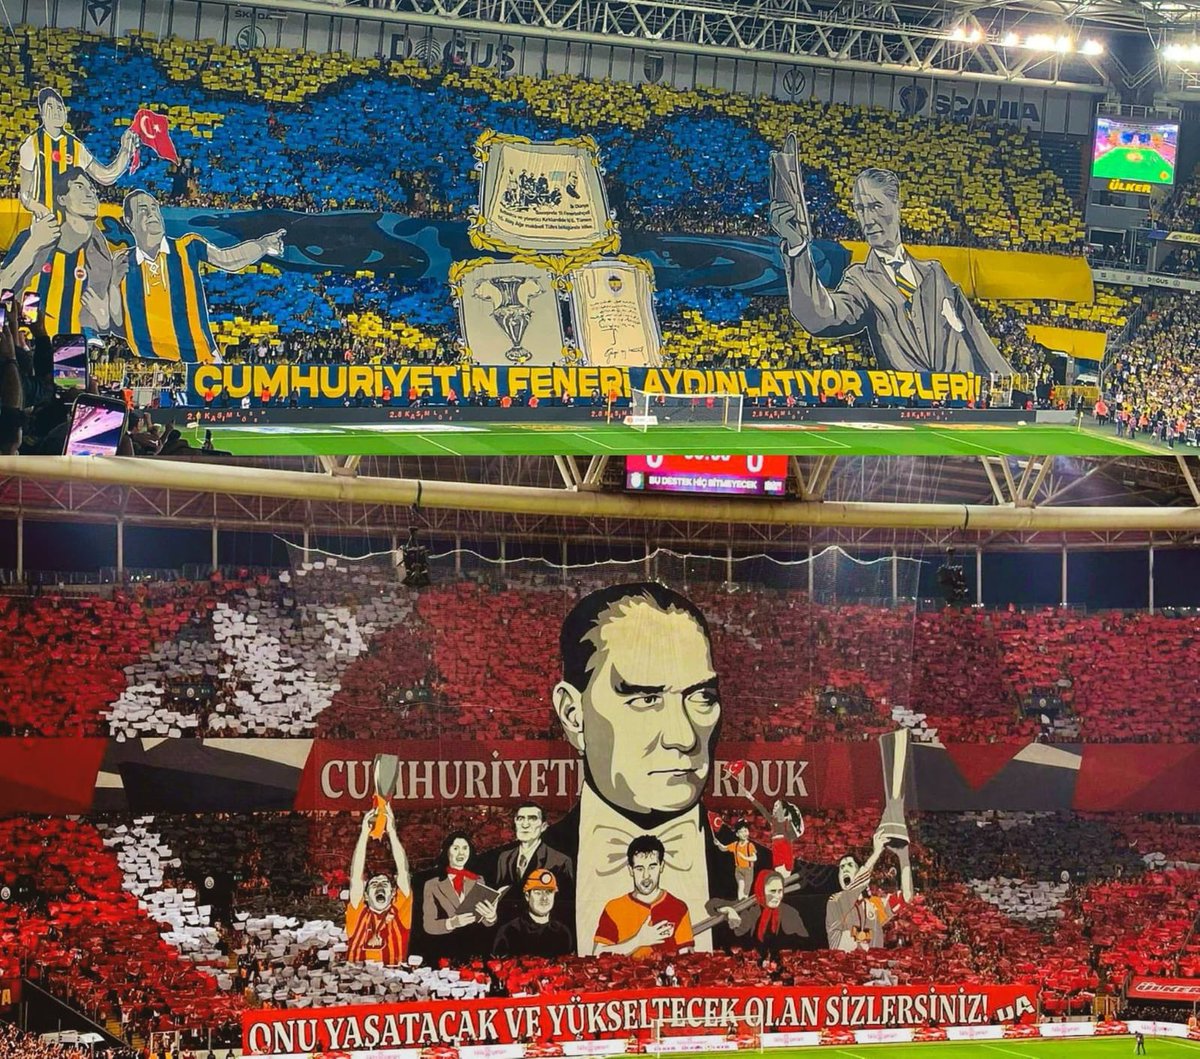 Maçı Atatürk'ün olduğu taraf kazanır! The side with Atatürk wins the match! الجانب مع أتاتورك يفوز بالمباراة!